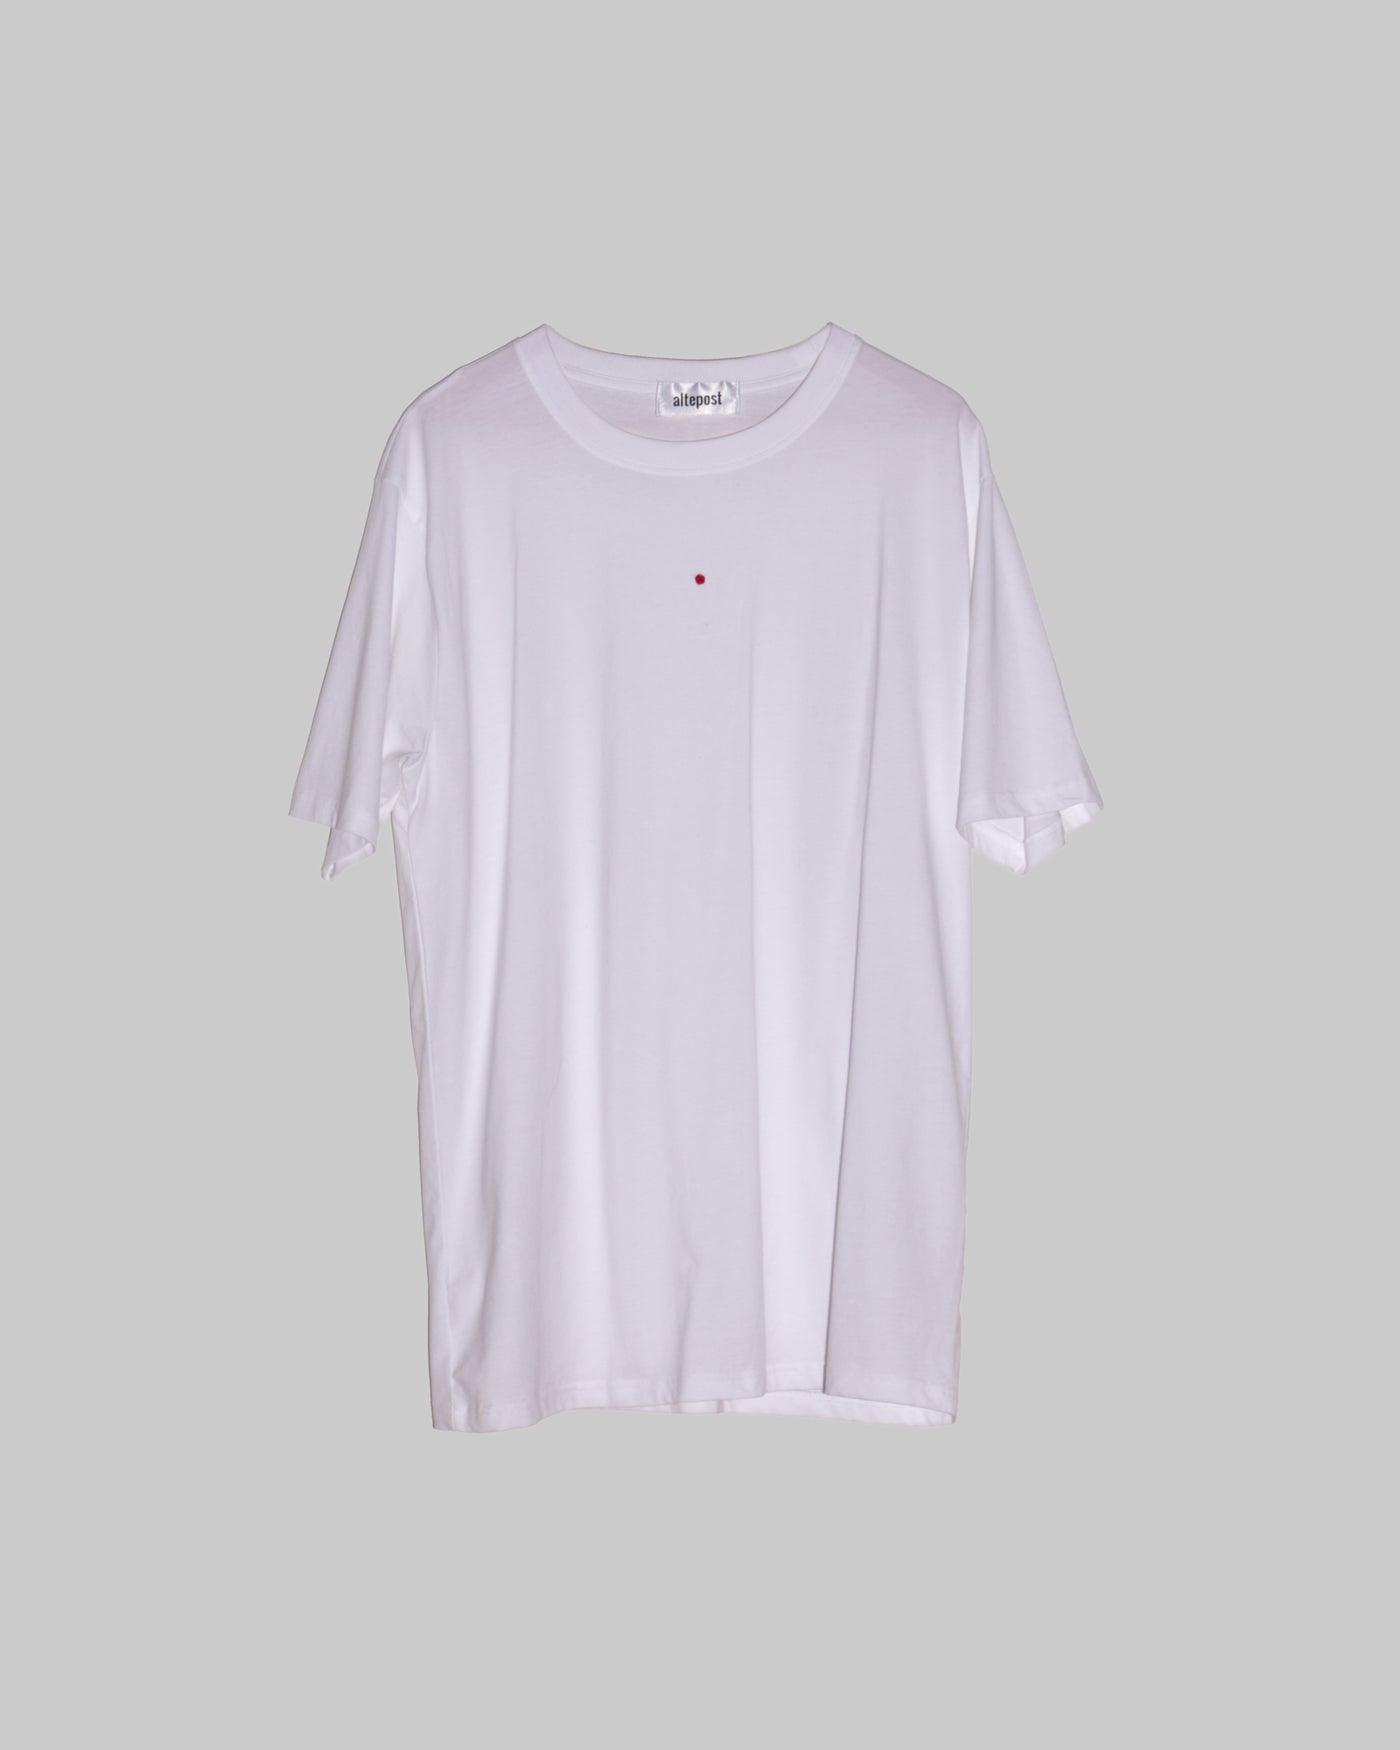 circle T-Shirt  - S,M,L,XL